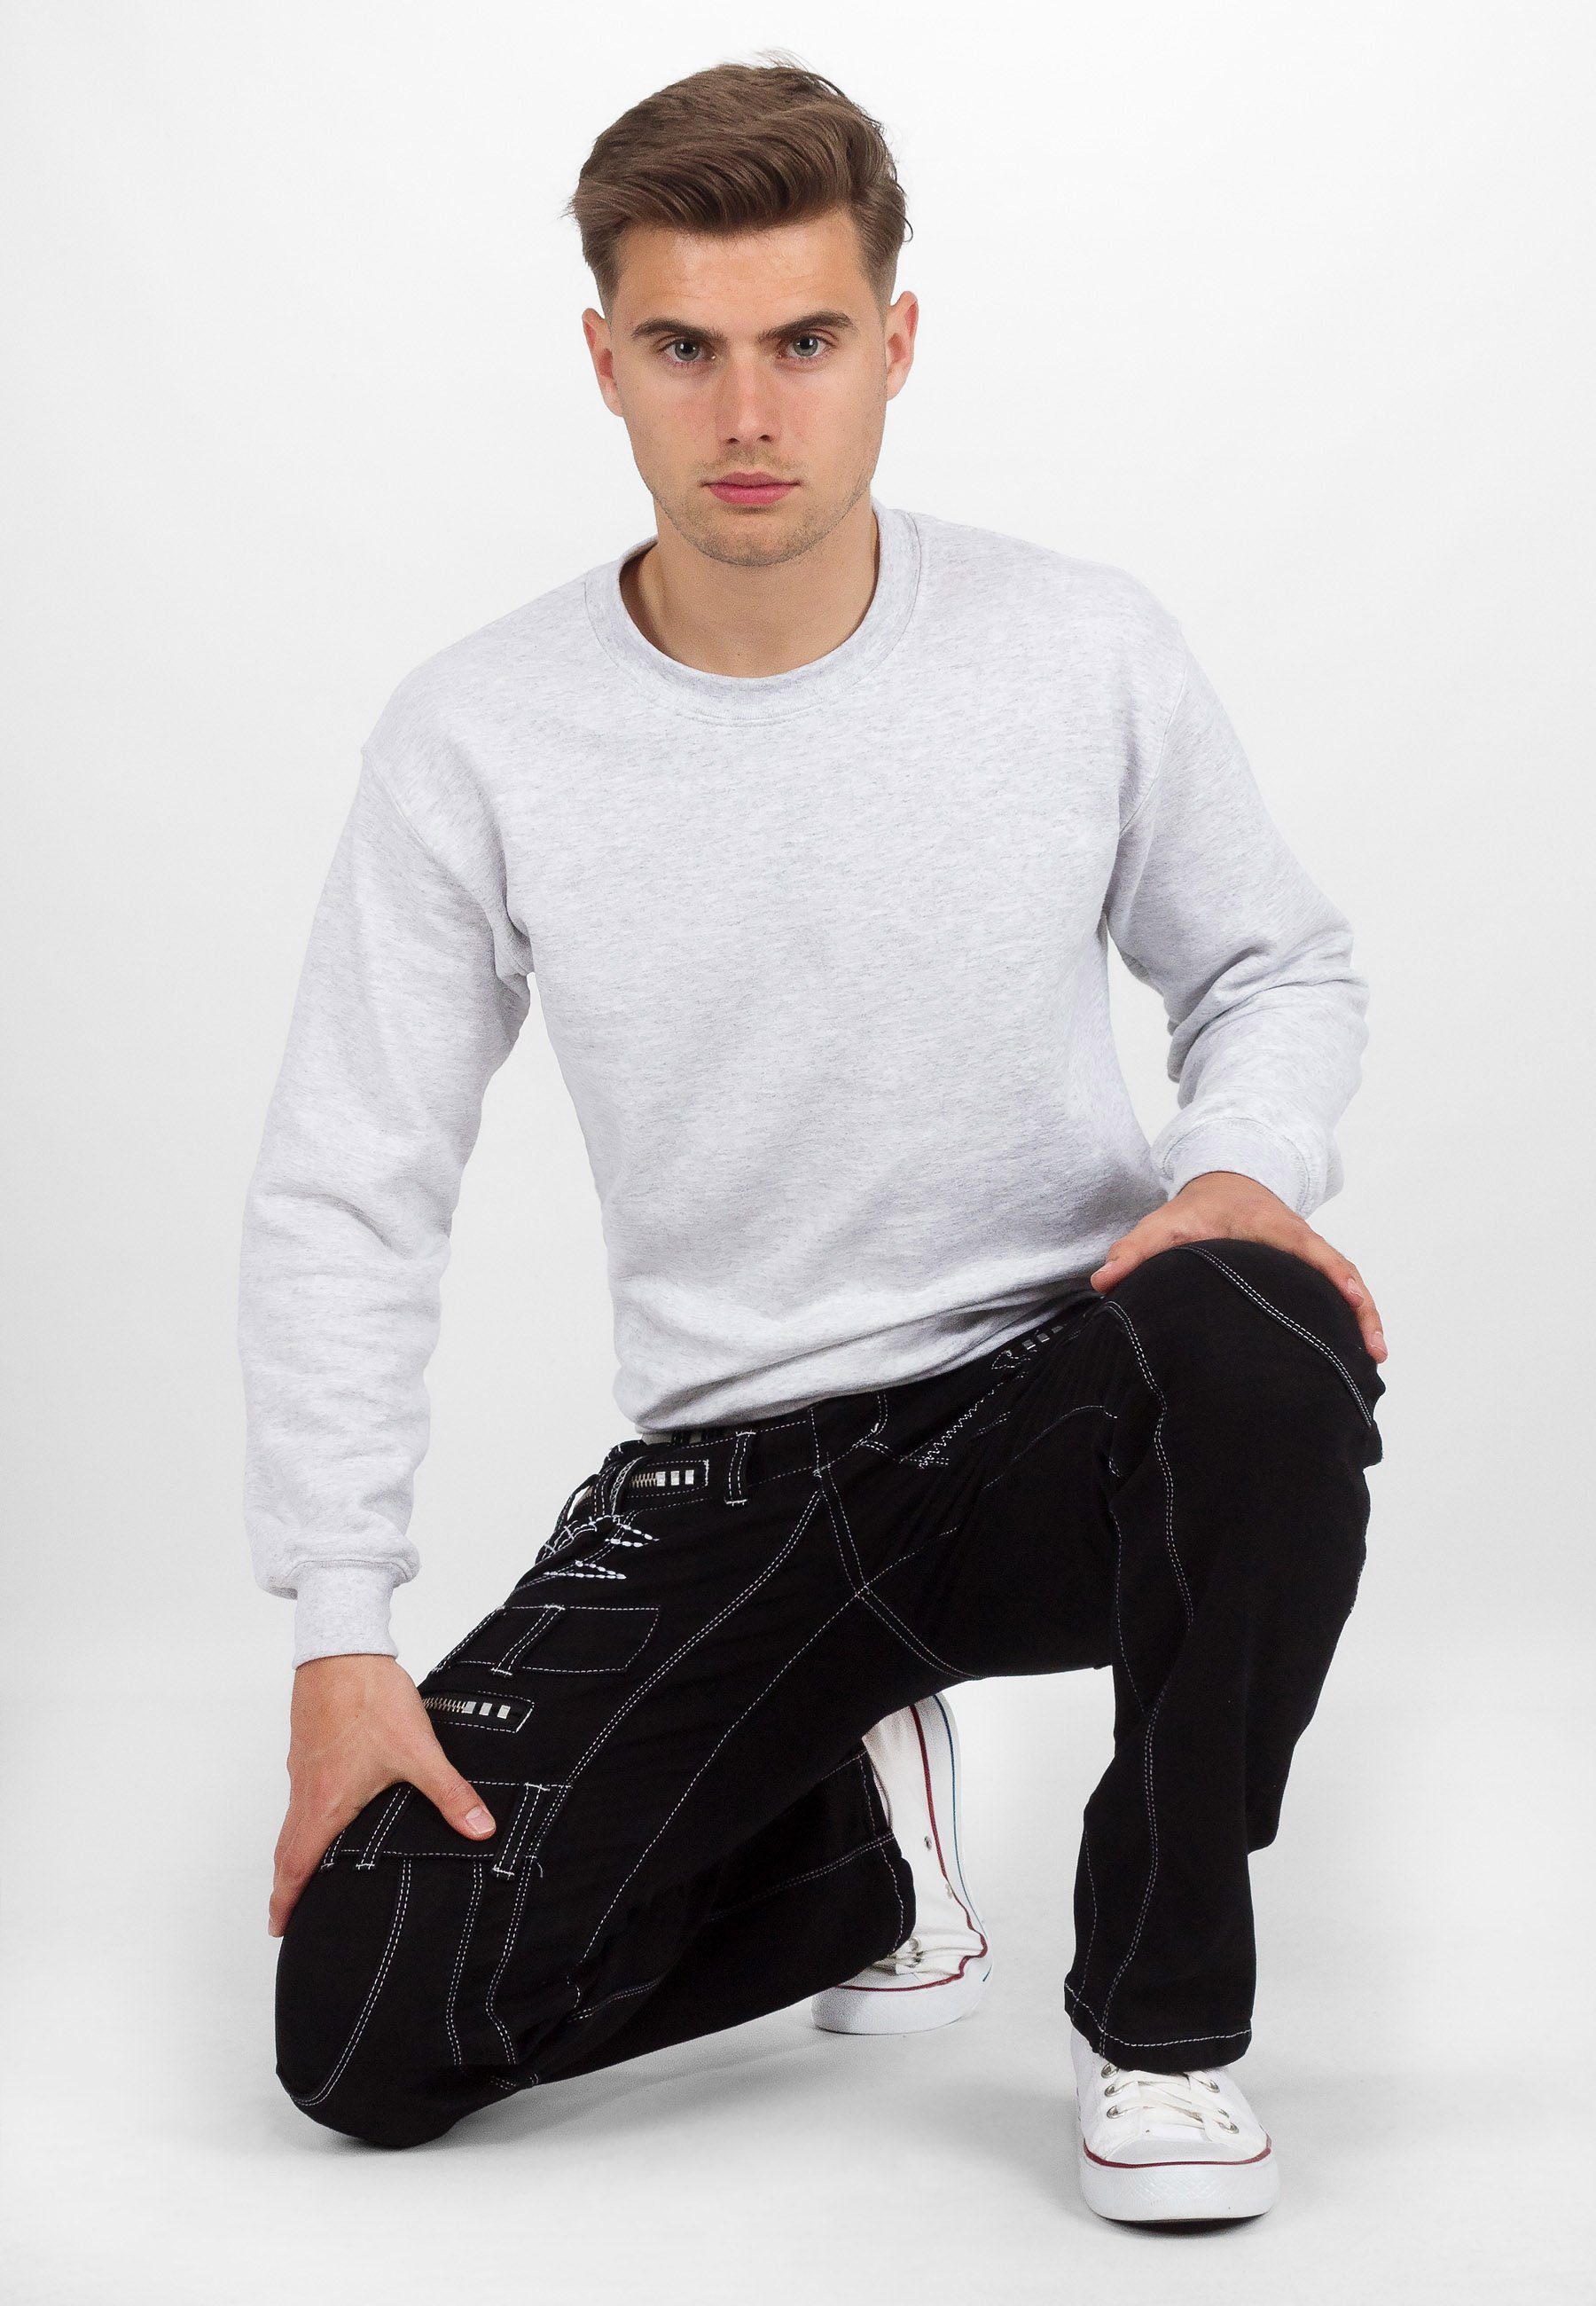 Kosmo Lupo Aufgesetzten Design 5-Pocket-Jeans schwarz BA-KM009 Markantes Auffällige Applikationen Hose mit Herren